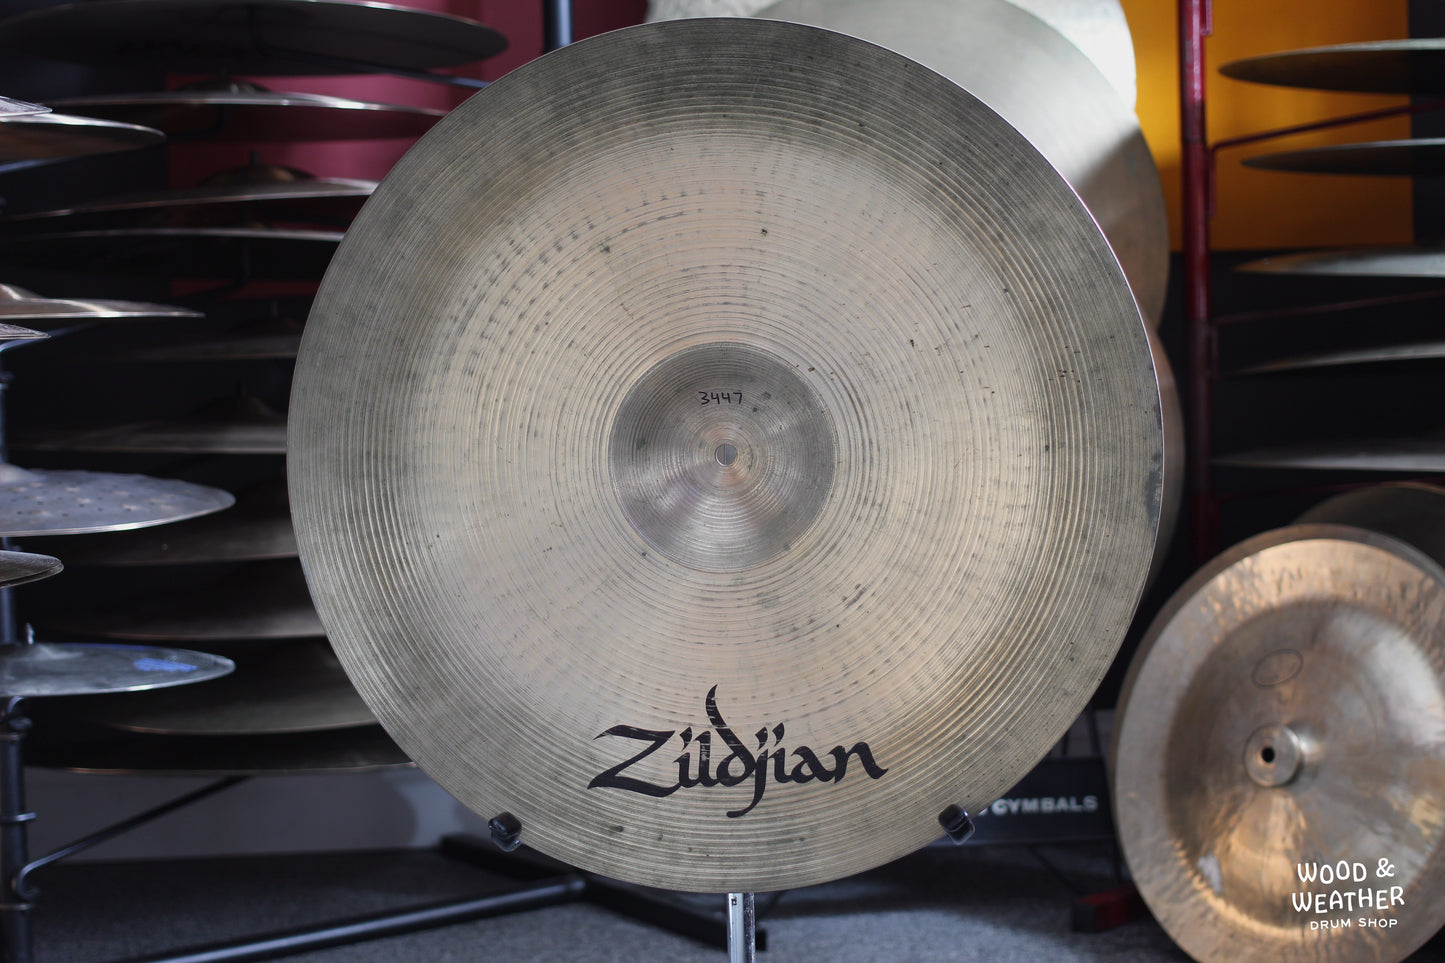 1980s A. Zildjian 22" "CO. Stamp" Ping Ride Cymbal 3447g